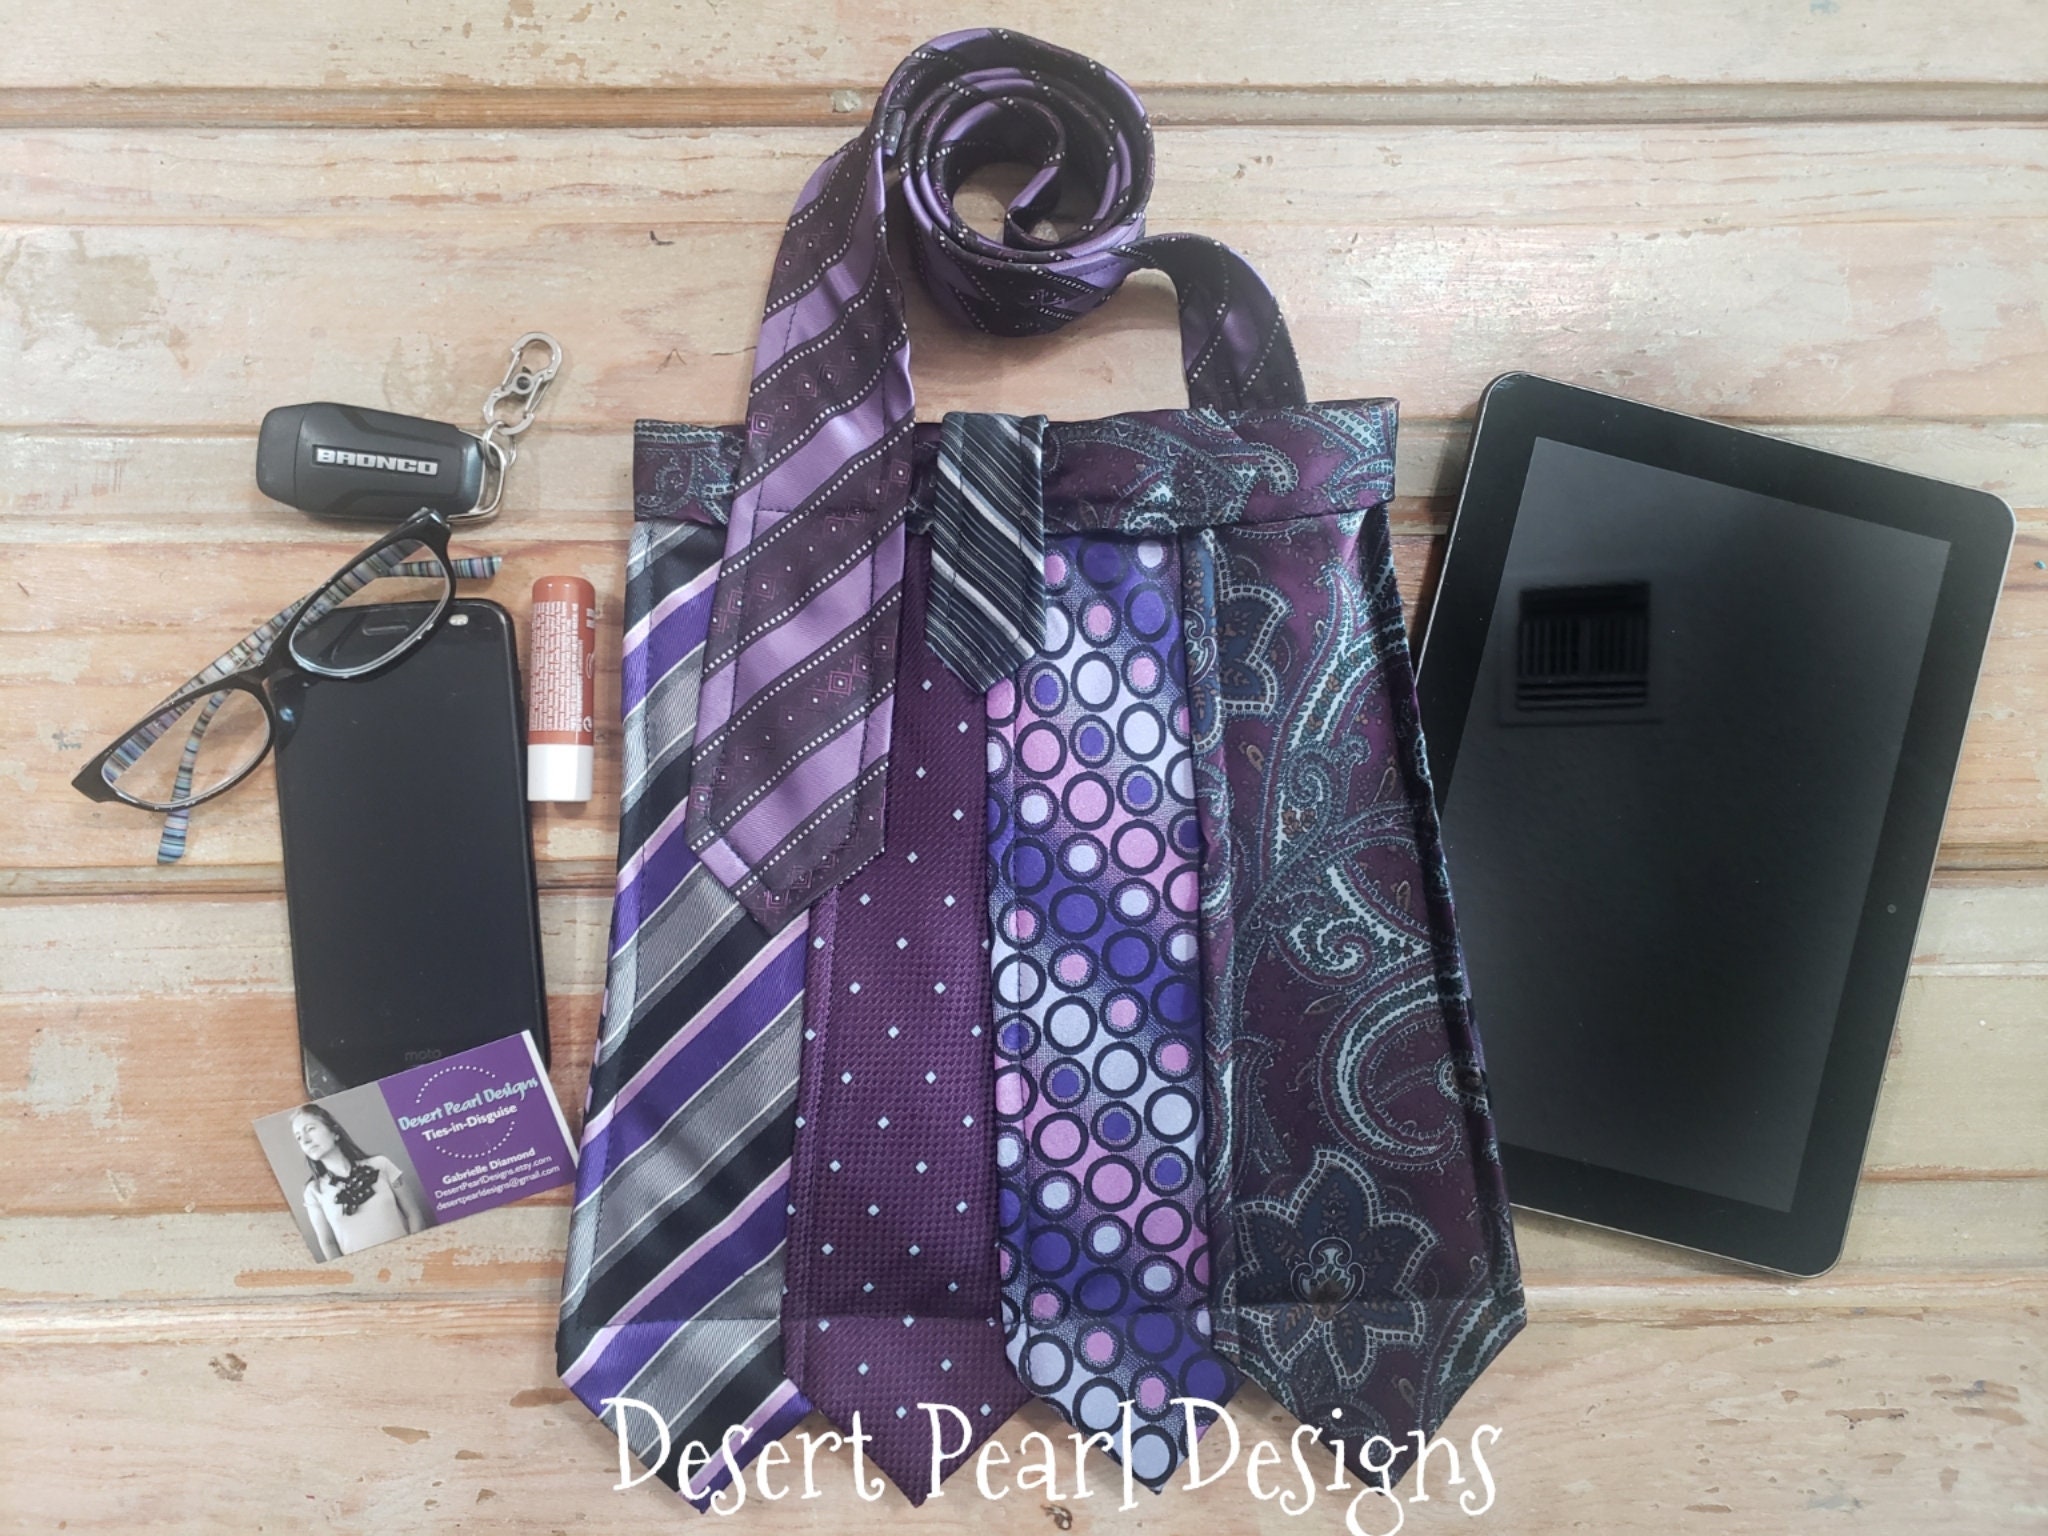 Buy Dark Purple Flower Pattern Silk with Genuine Leather Tote Bag